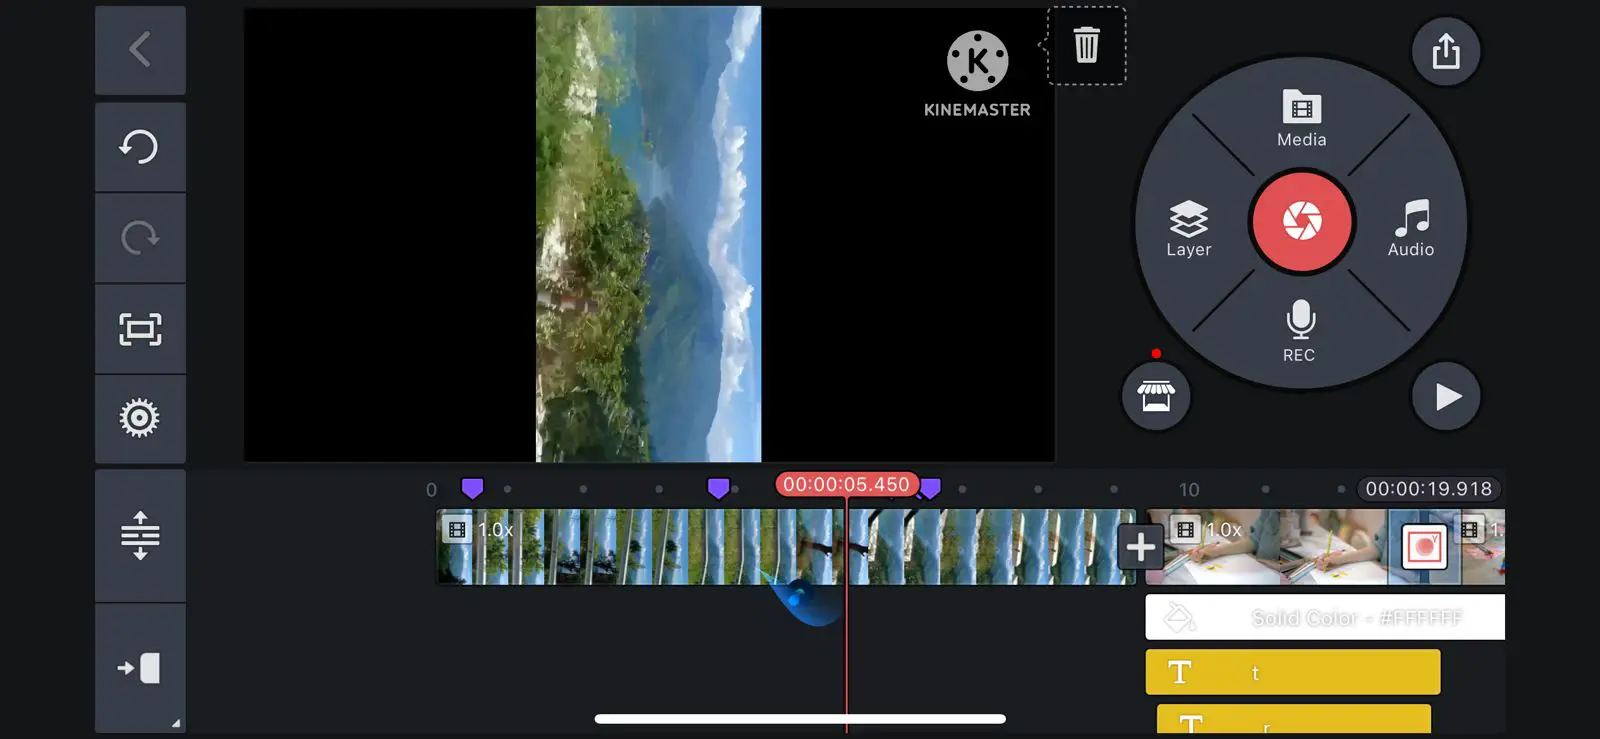 edit videos in iphone using kinemaster